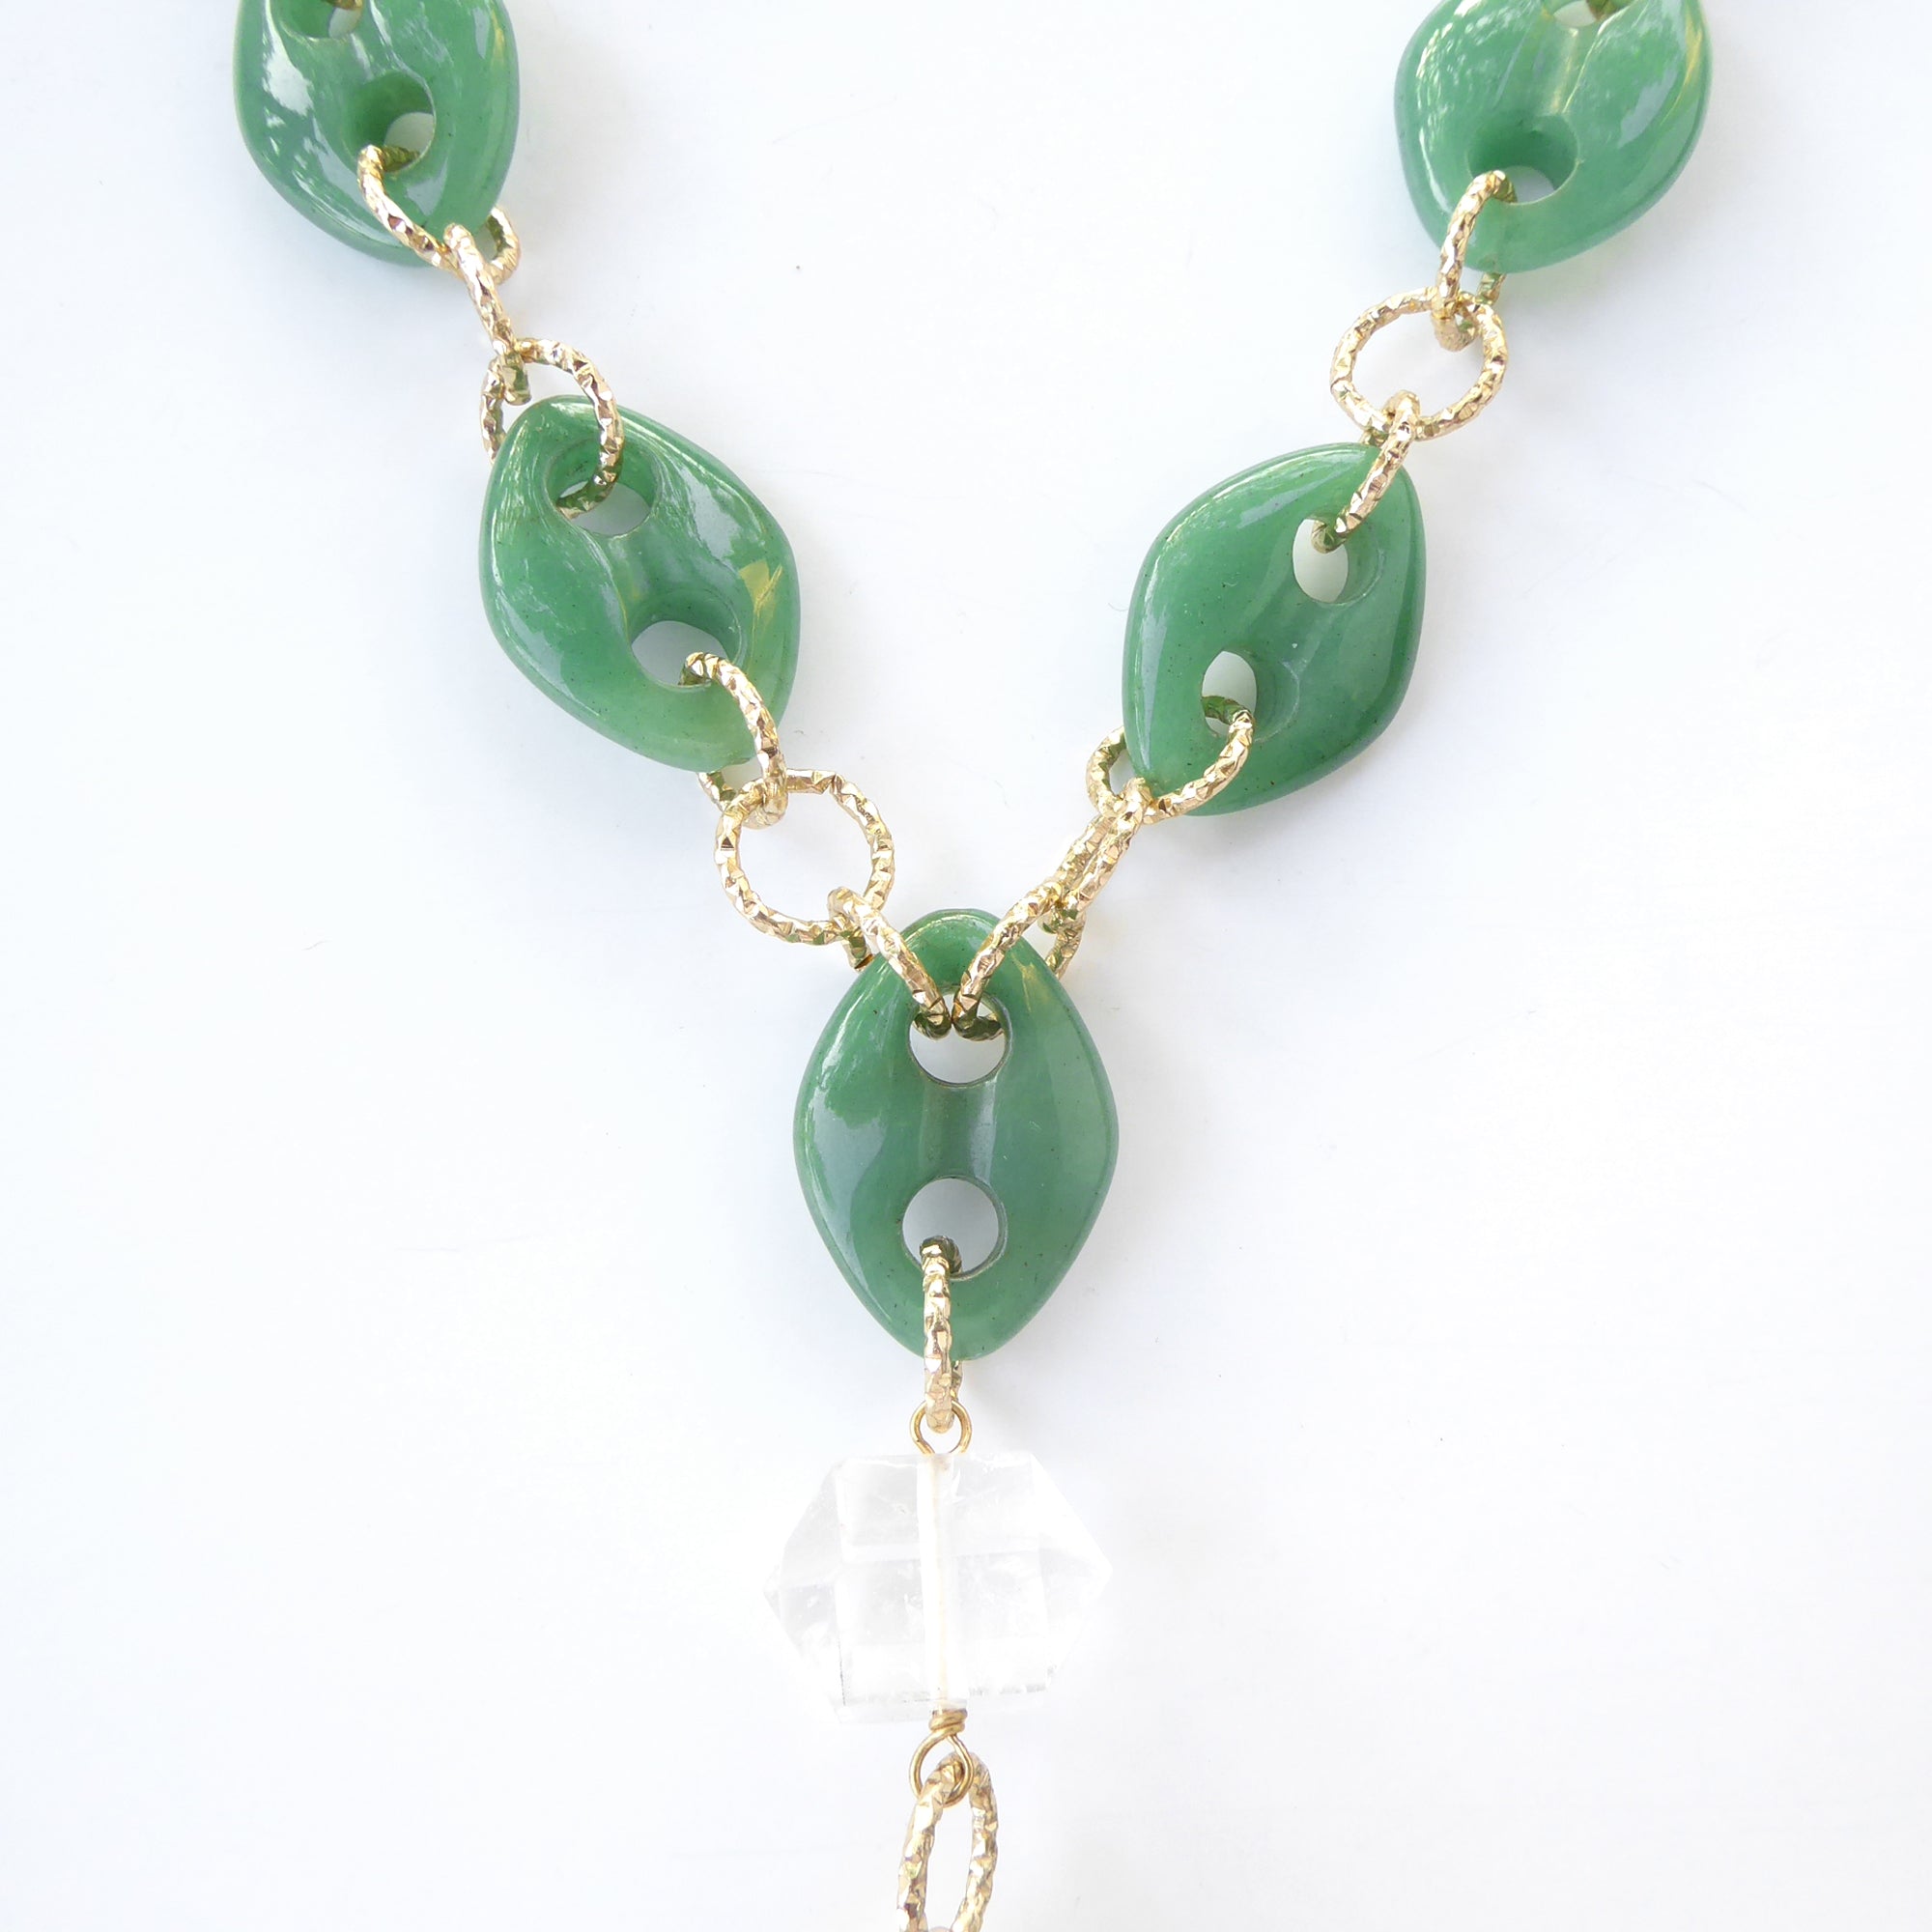 Green quartz spike necklace by Jenny Dayco 5